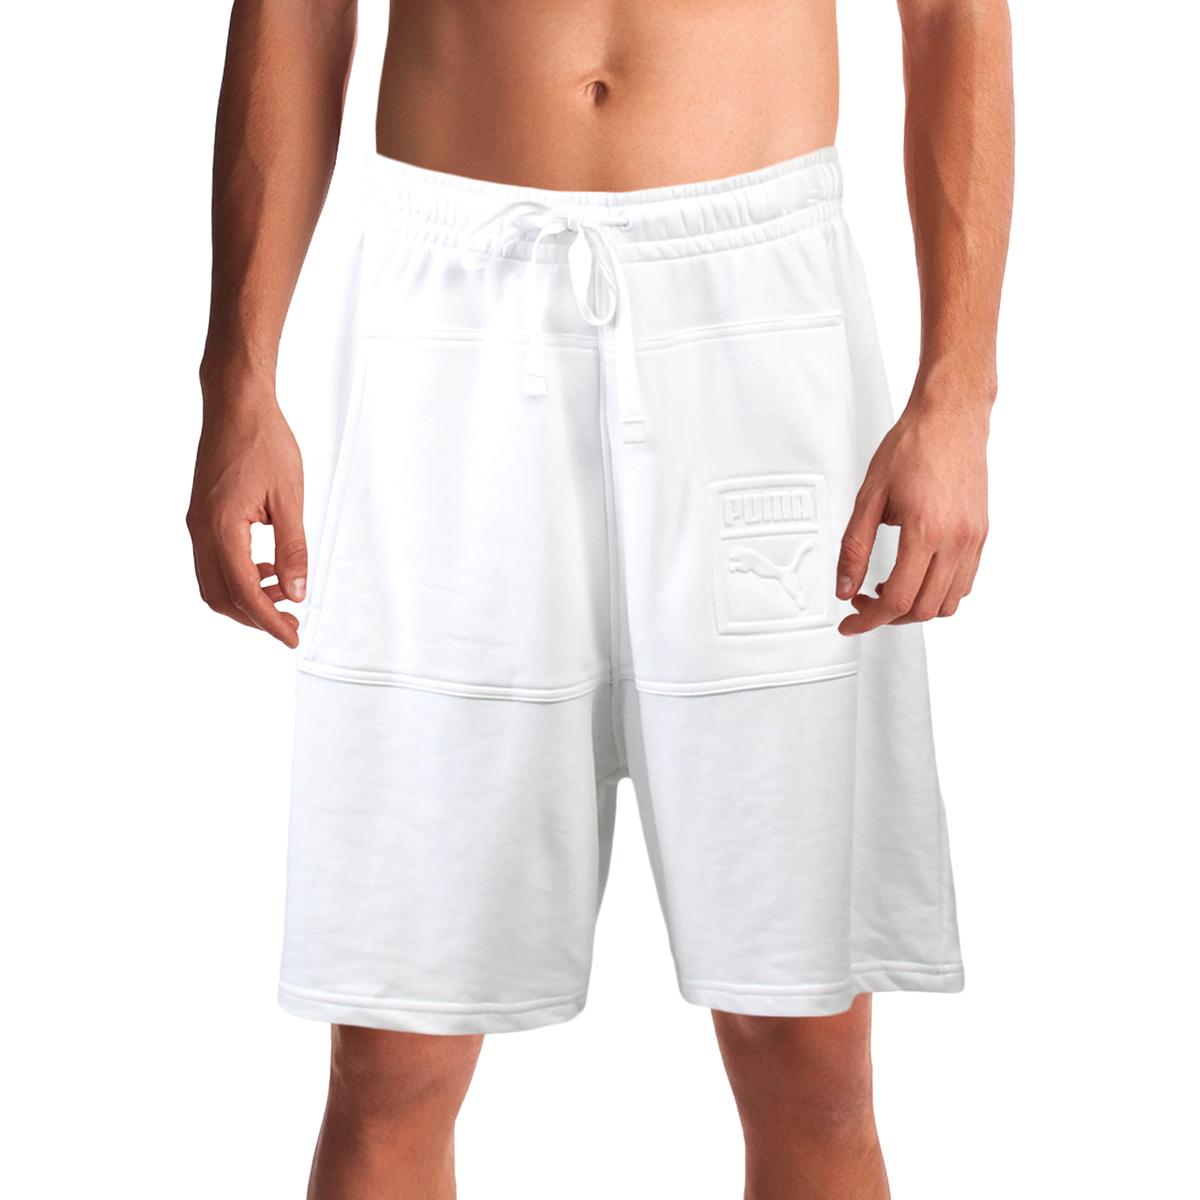 puma workout shorts